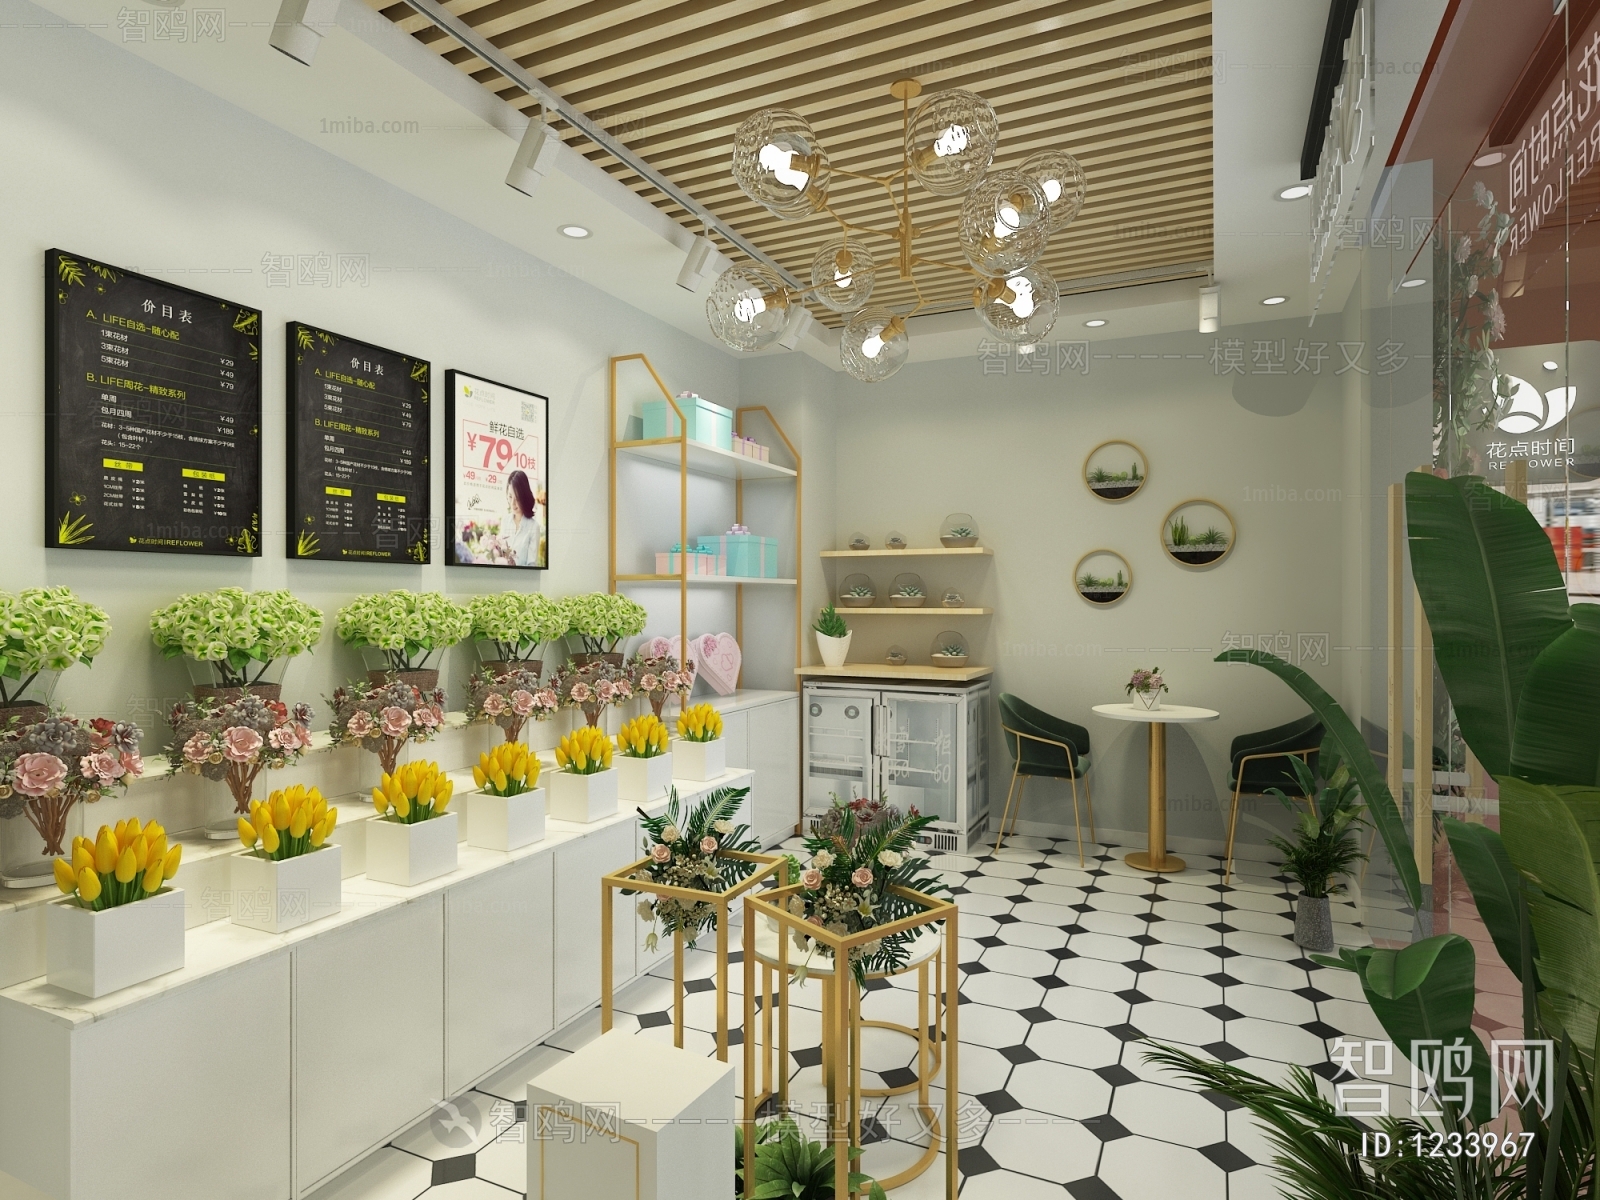 Modern Flower Shop